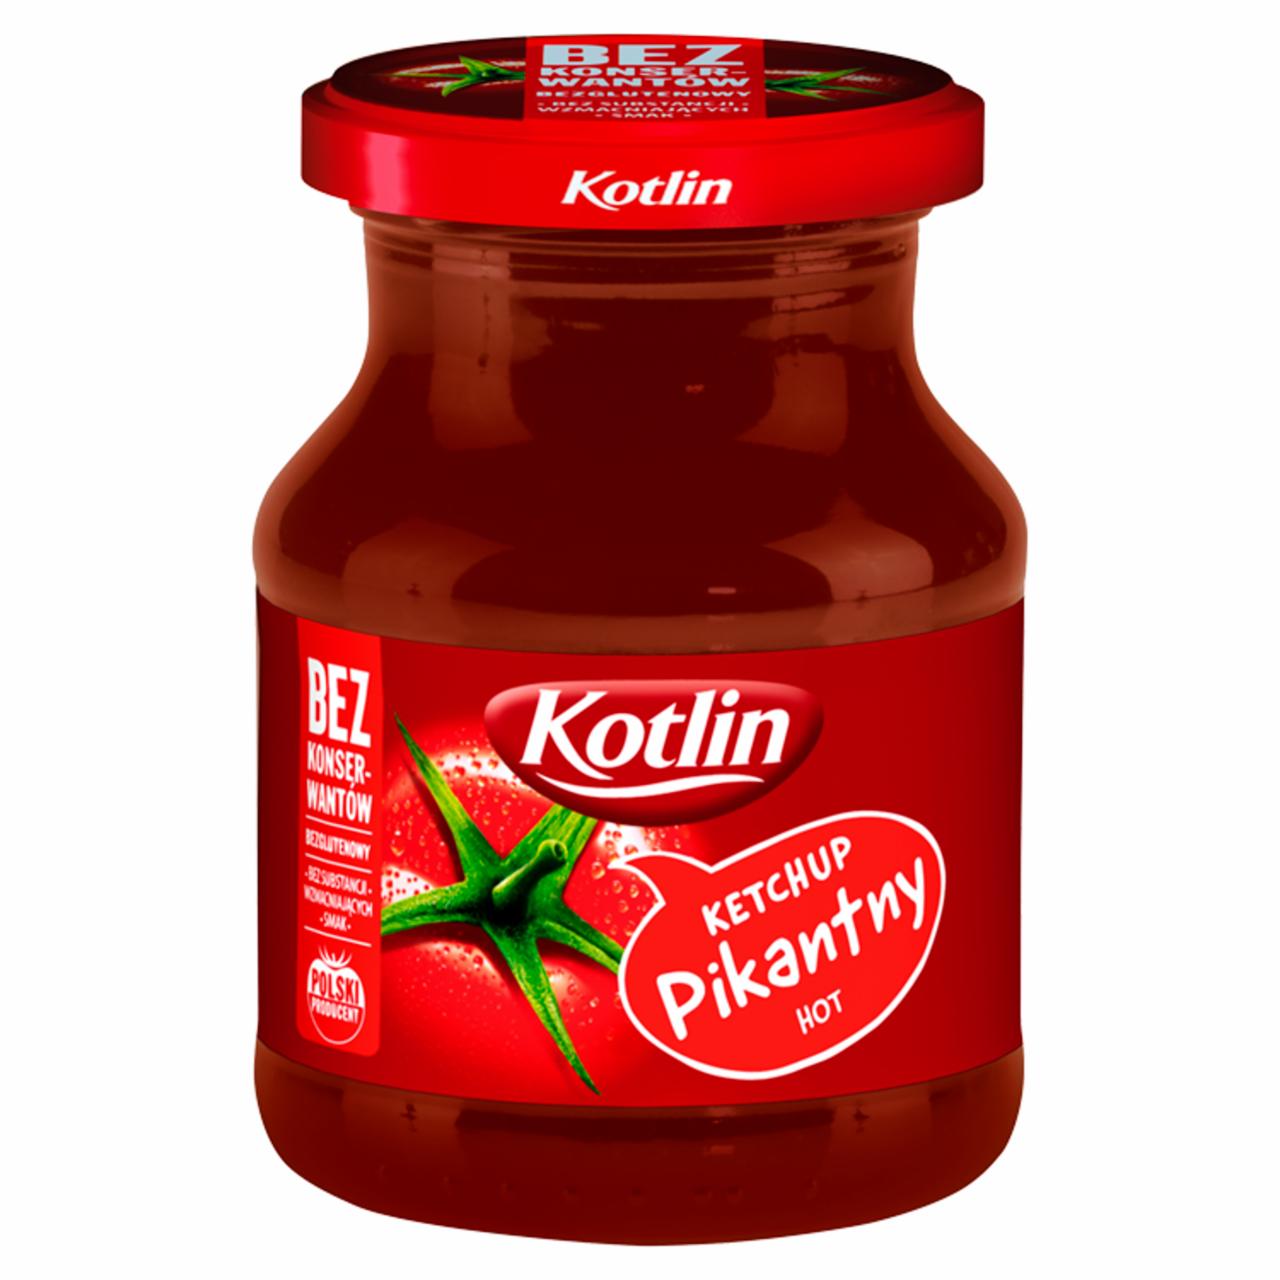 Zdjęcia - Kotlin Ketchup pikantny